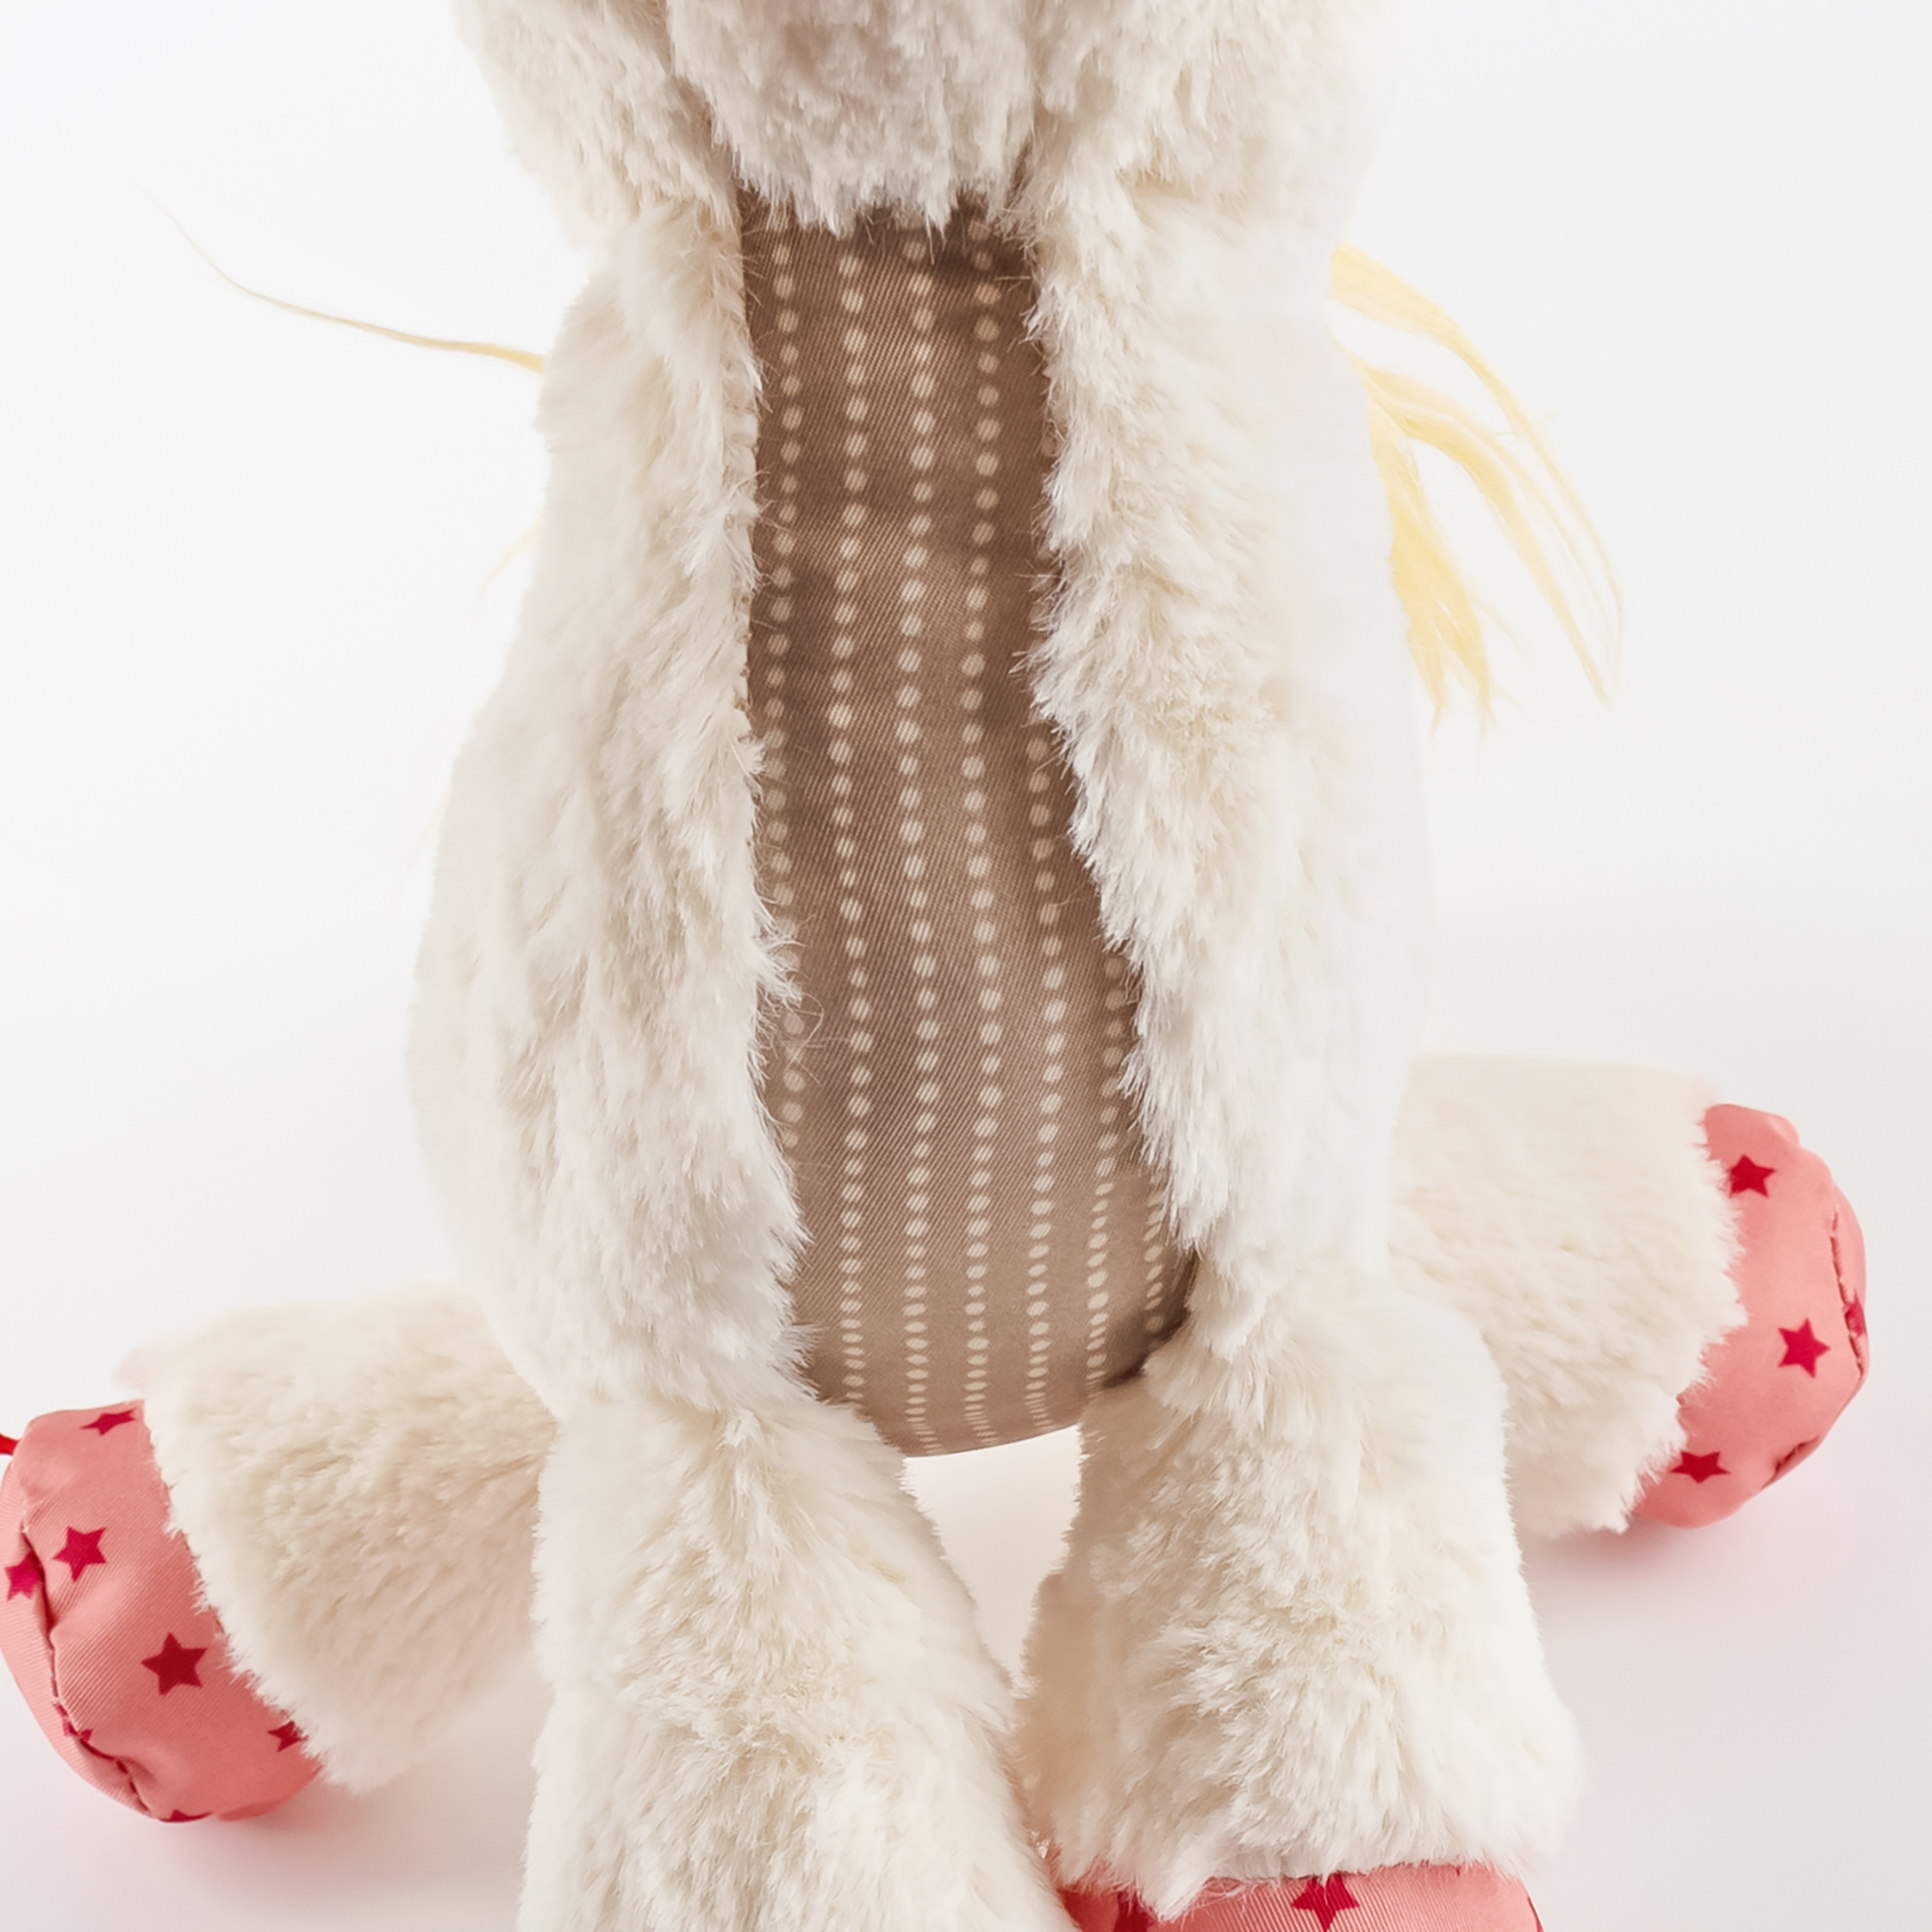 Plush toy unicorn, Patchwork Sweety